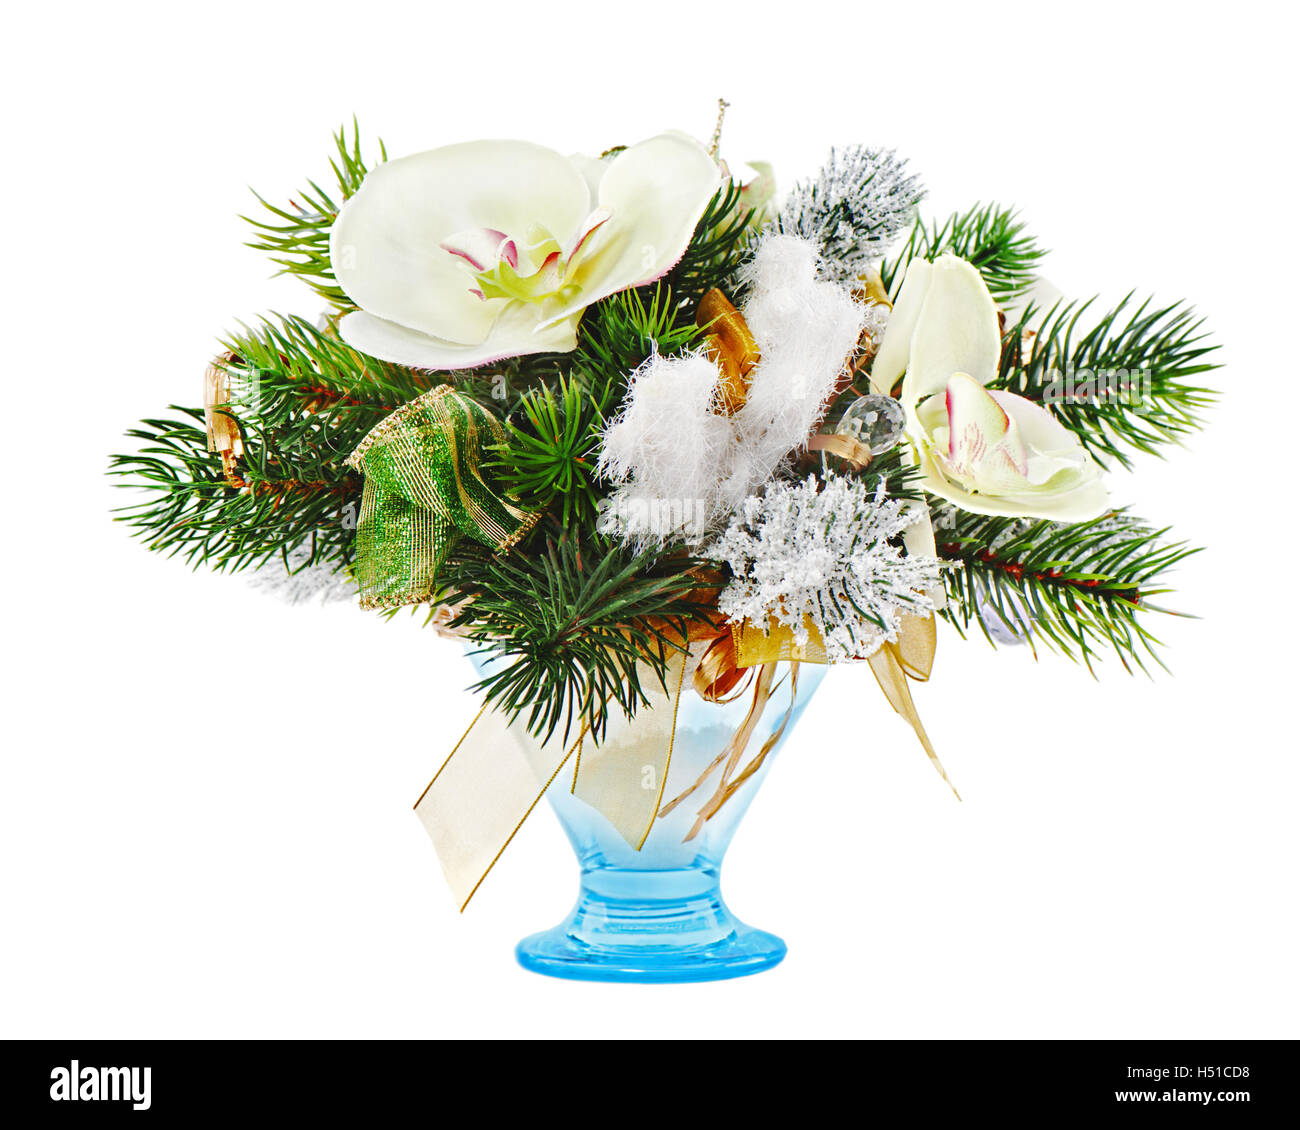 Natale la disposizione delle palle di Natale, i fiocchi di neve, candele e rami di pino isolato su sfondo bianco. Foto Stock